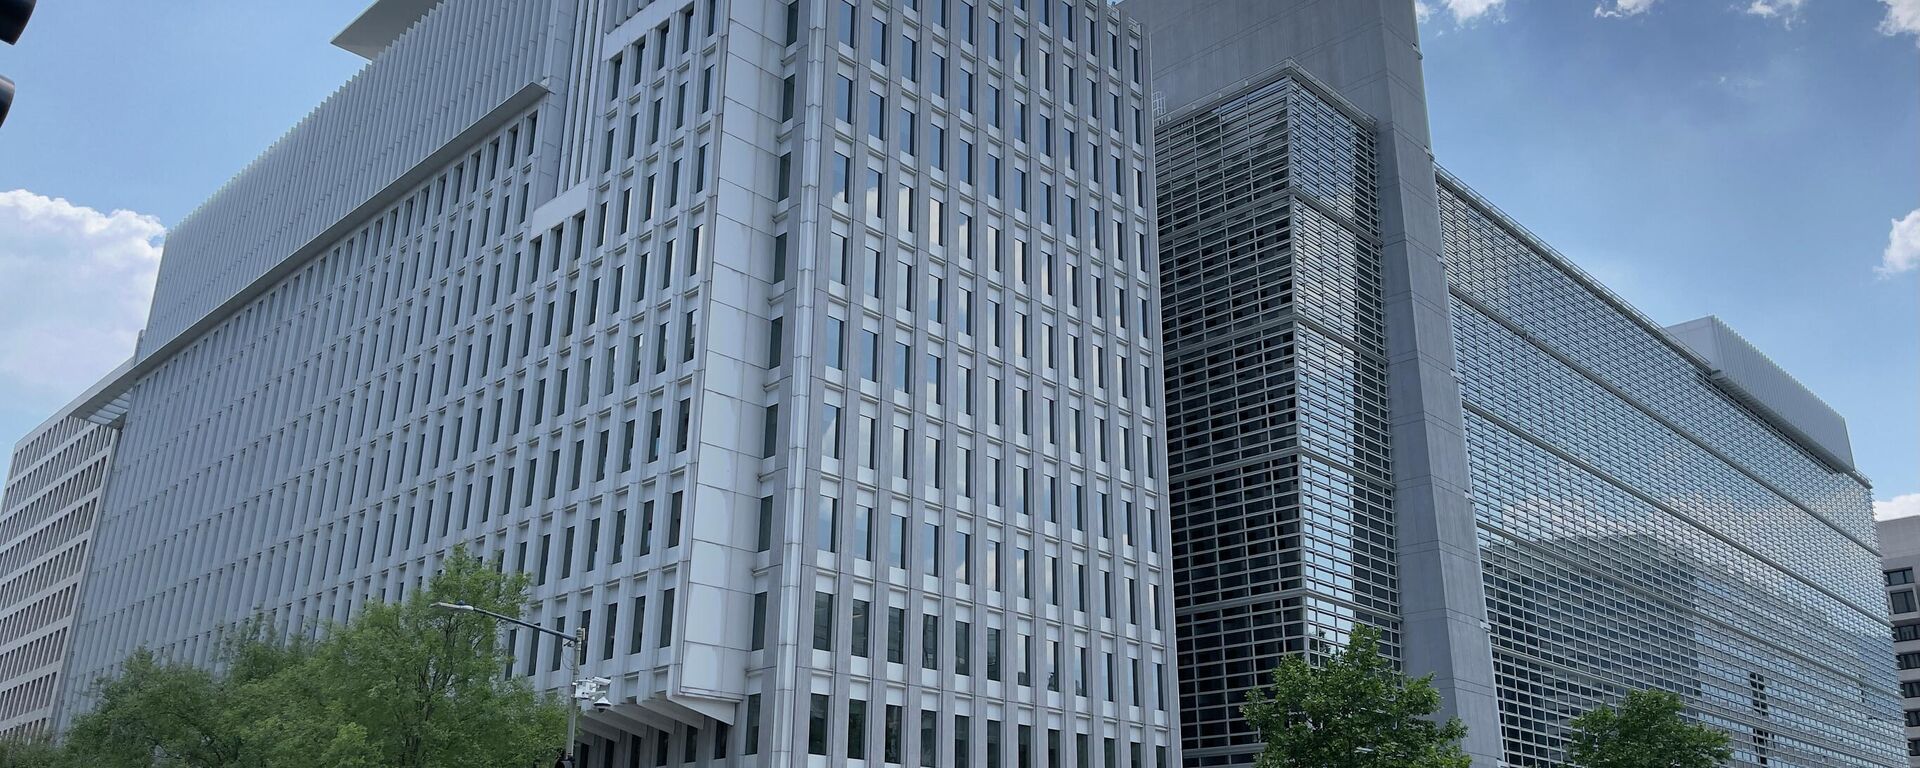 Штаб-квартира Всемирного банка в Вашингтоне - Sputnik Узбекистан, 1920, 14.06.2021